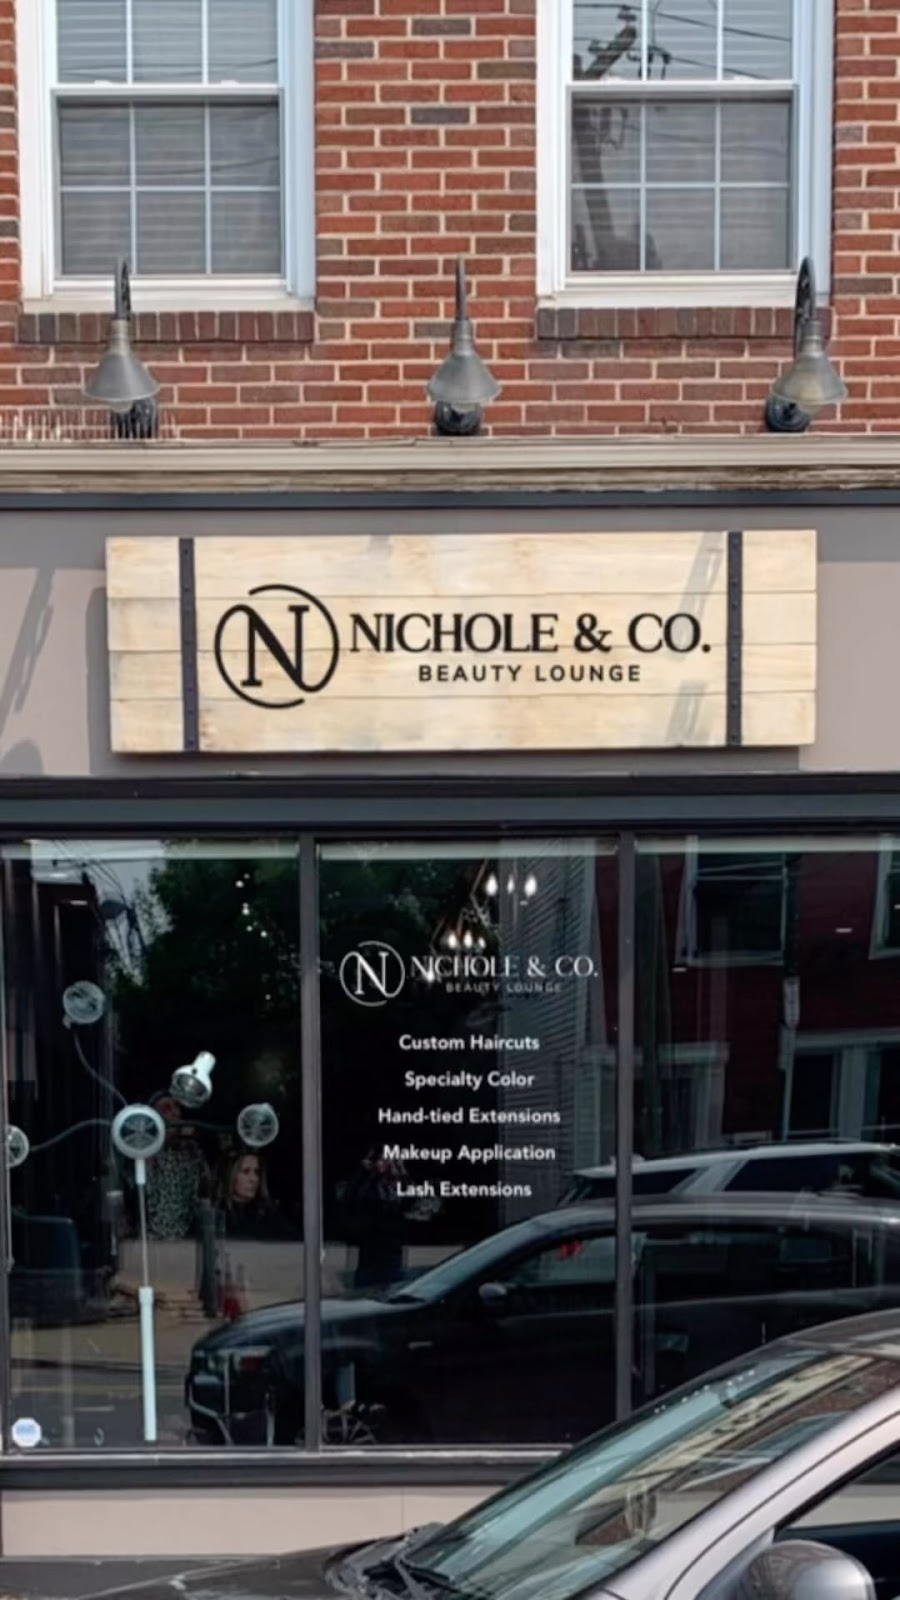 Nichole & Co. Beauty Lounge | 35 N Main St, Southington, CT 06489 | Phone: (203) 496-8665